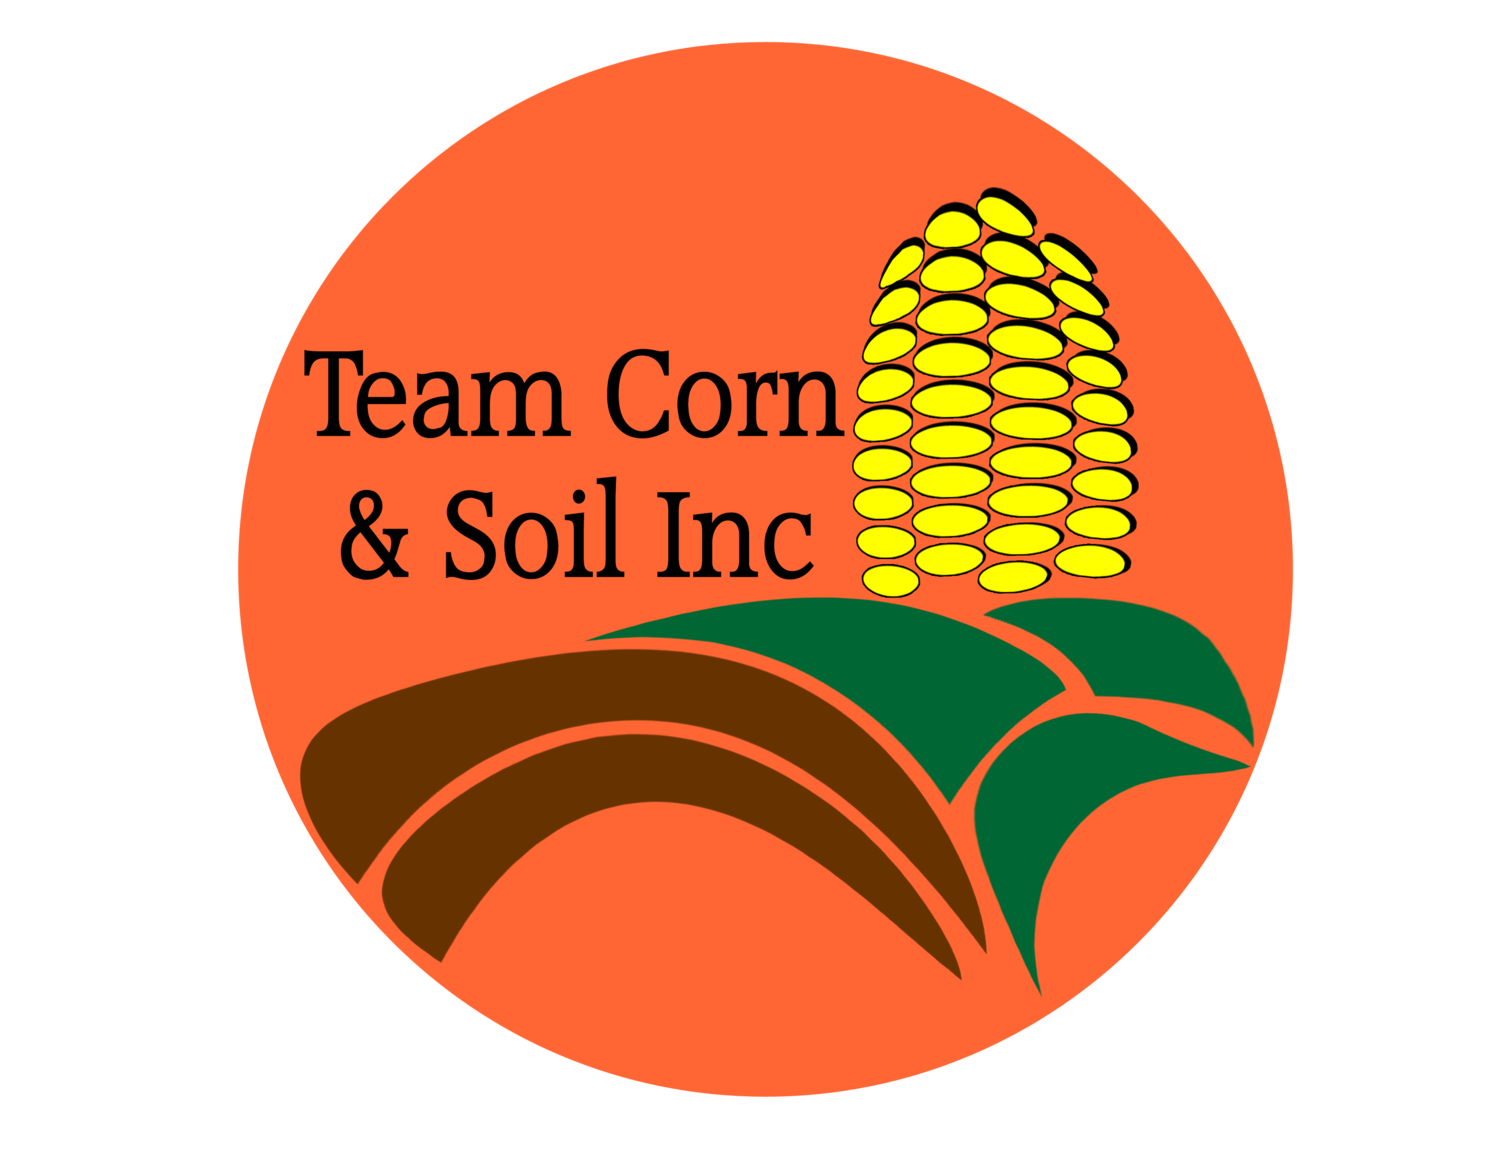 Team Corn & Soil Inc